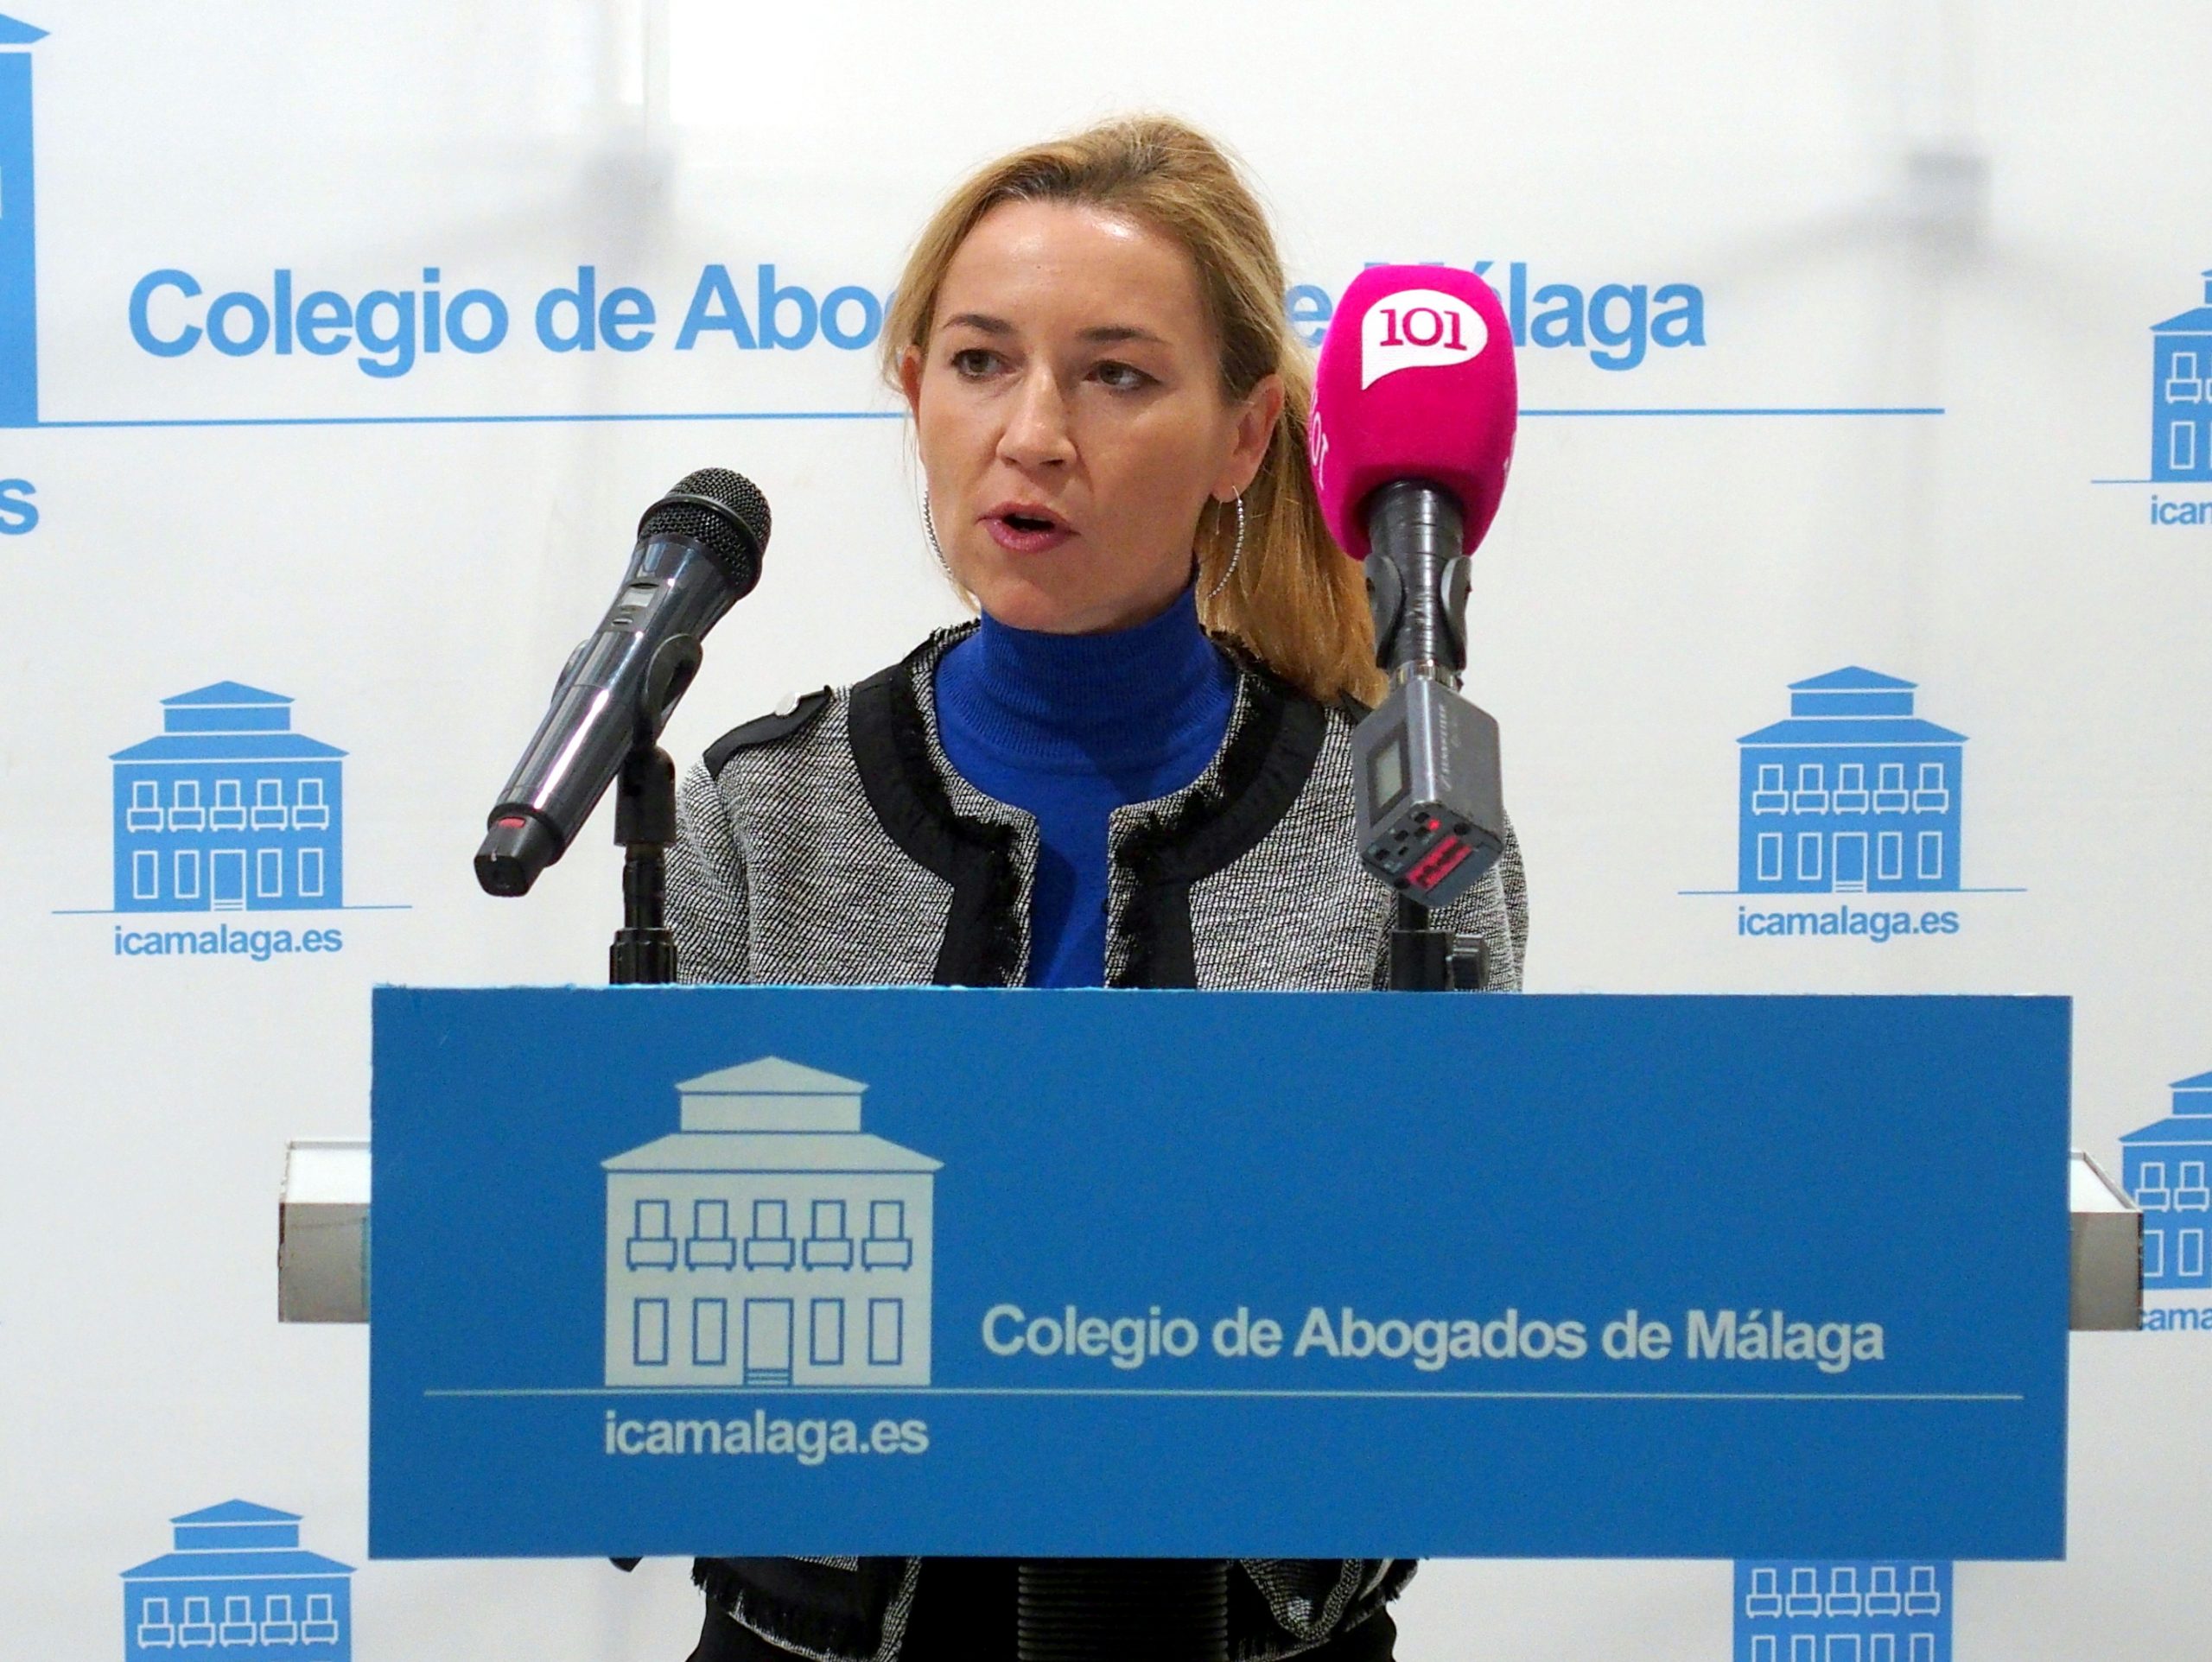 Foto: Colegio de Abogados de Málaga